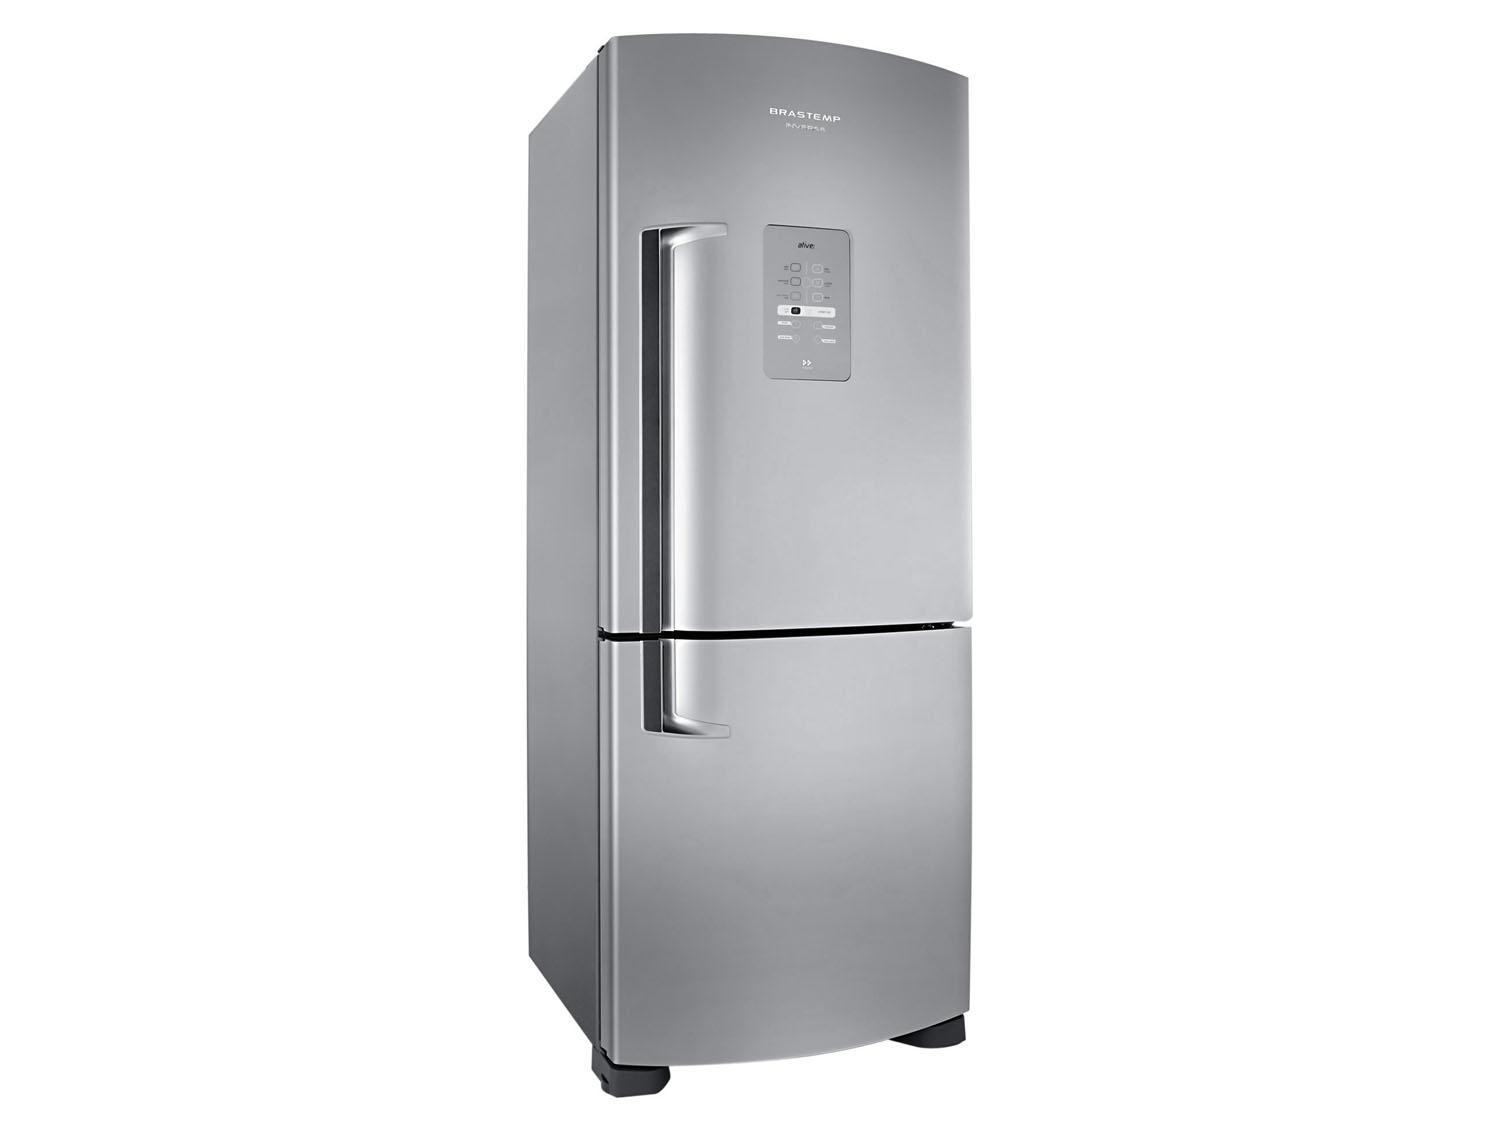 Refrigerador brastemp inverse inox 422l